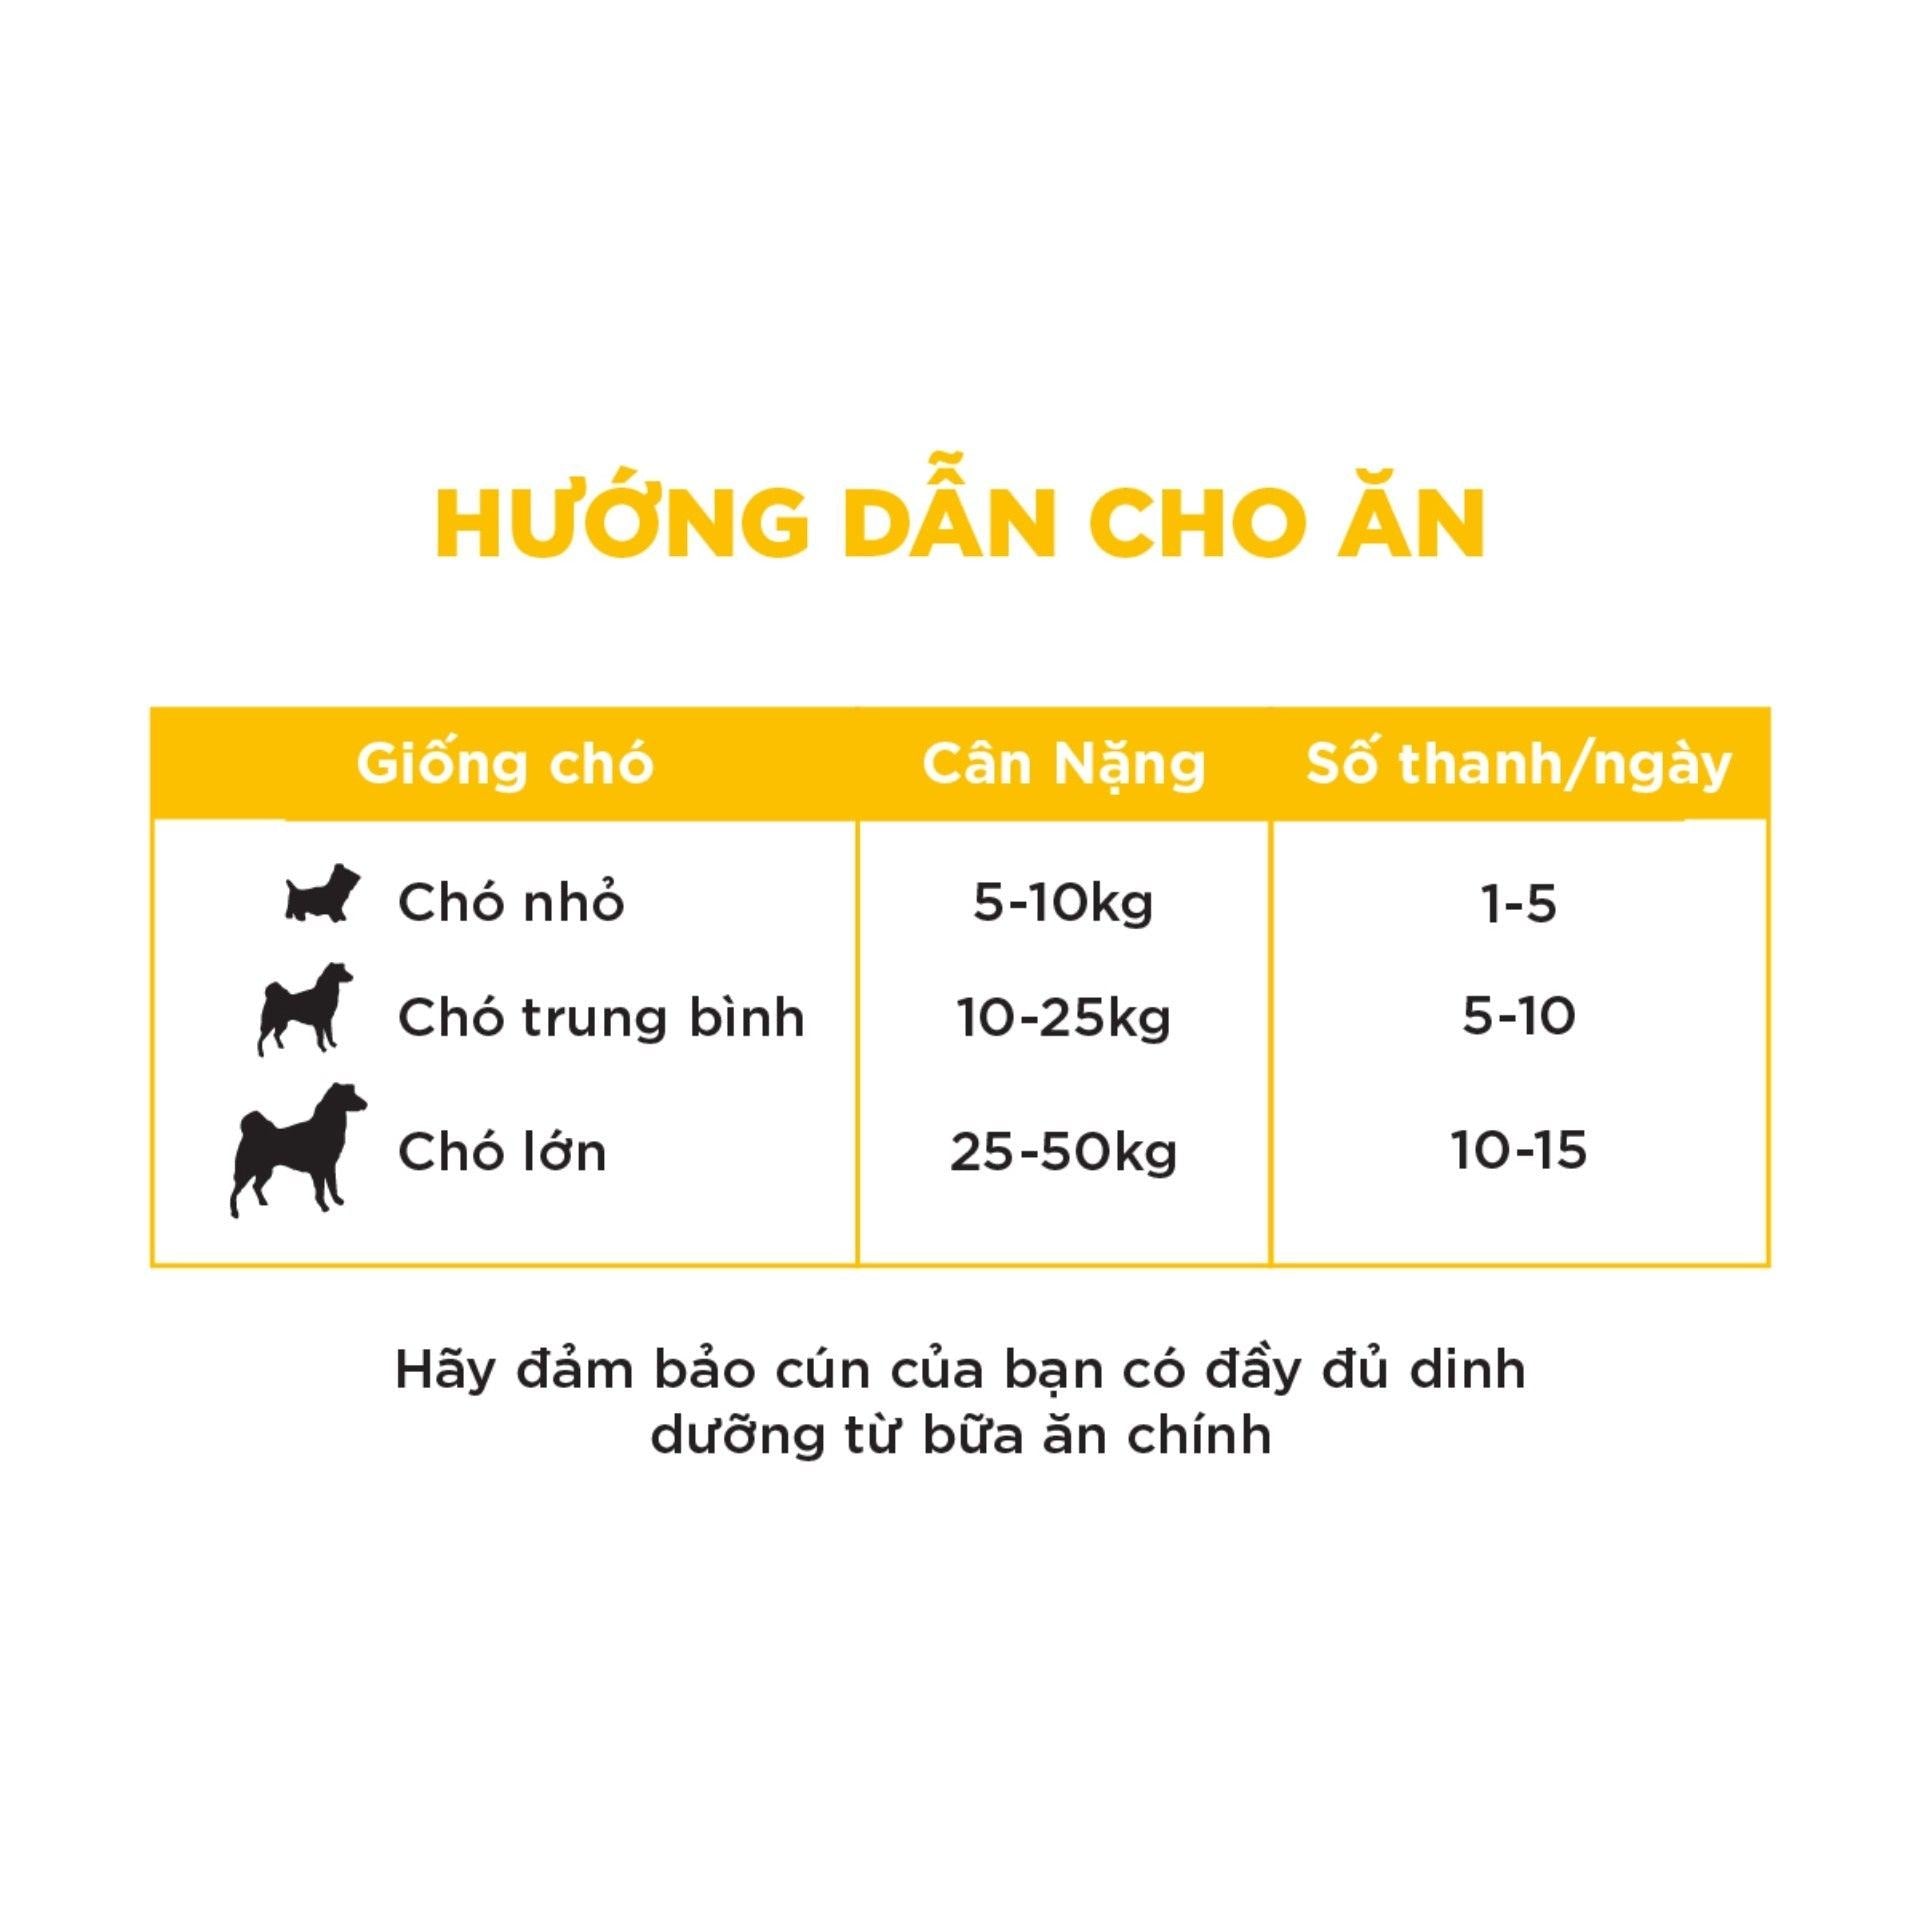 Snack Cho Chó Pedigree Meat Jerky Vị Bò Xông Khói 80g - Paddy Pet Shop